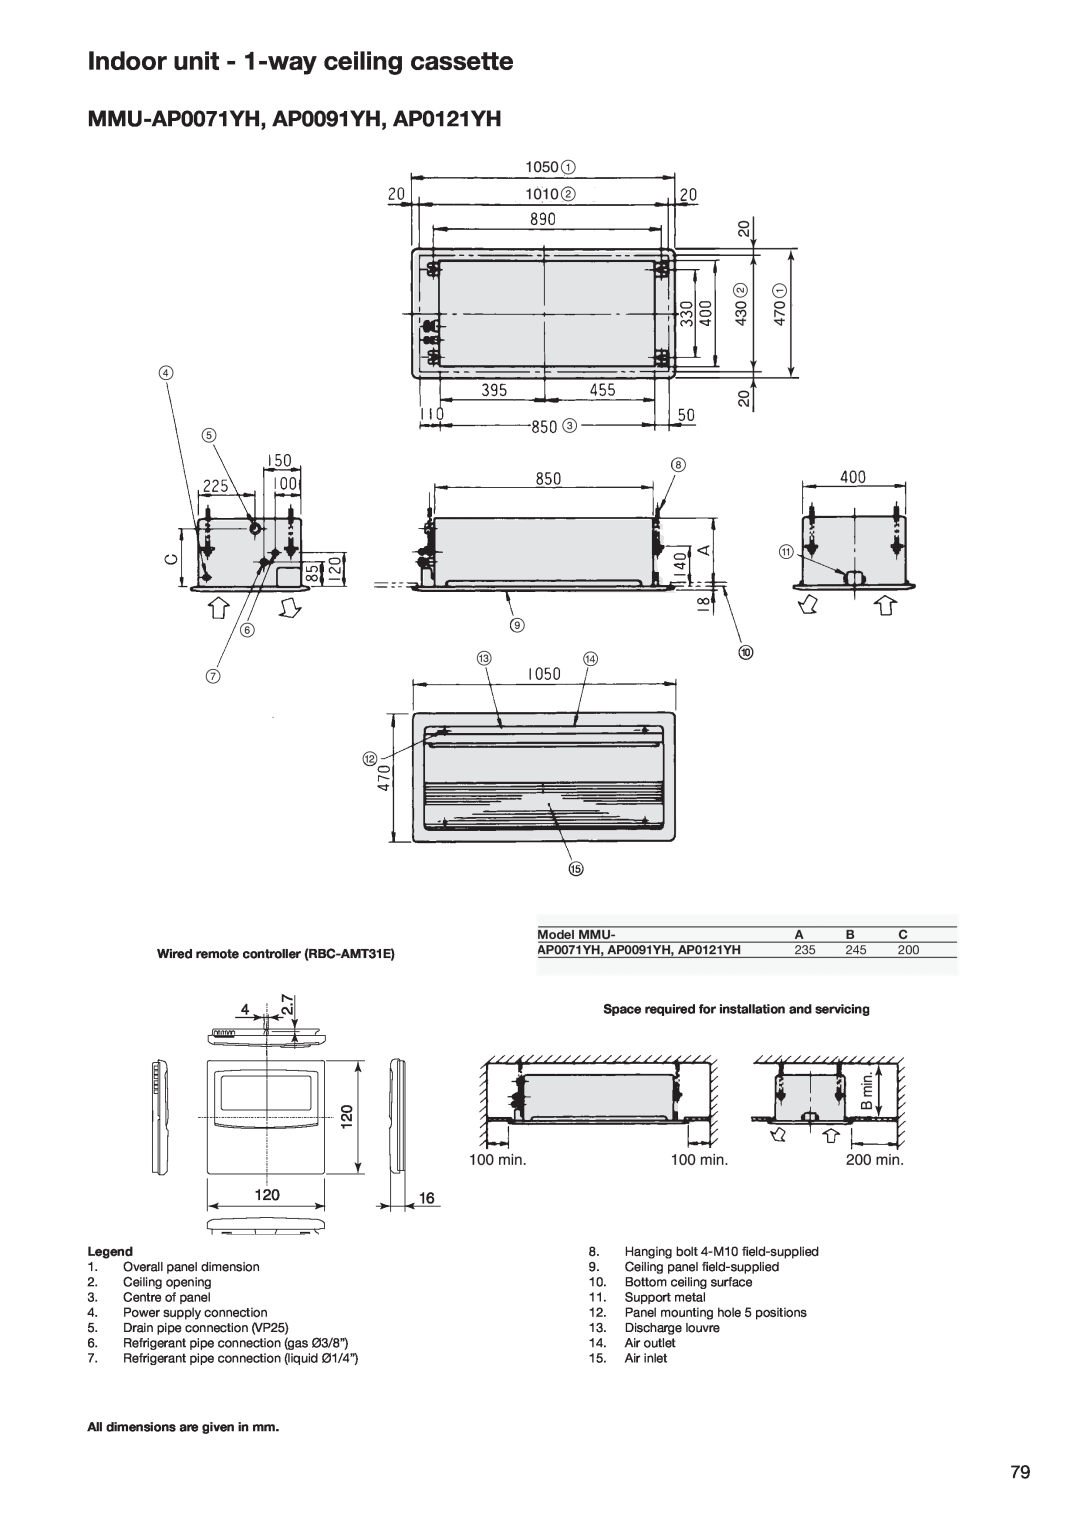 Toshiba HFC R-410A manual Indoor unit - 1-wayceiling cassette, MMU-AP0071YH,AP0091YH, AP0121YH 